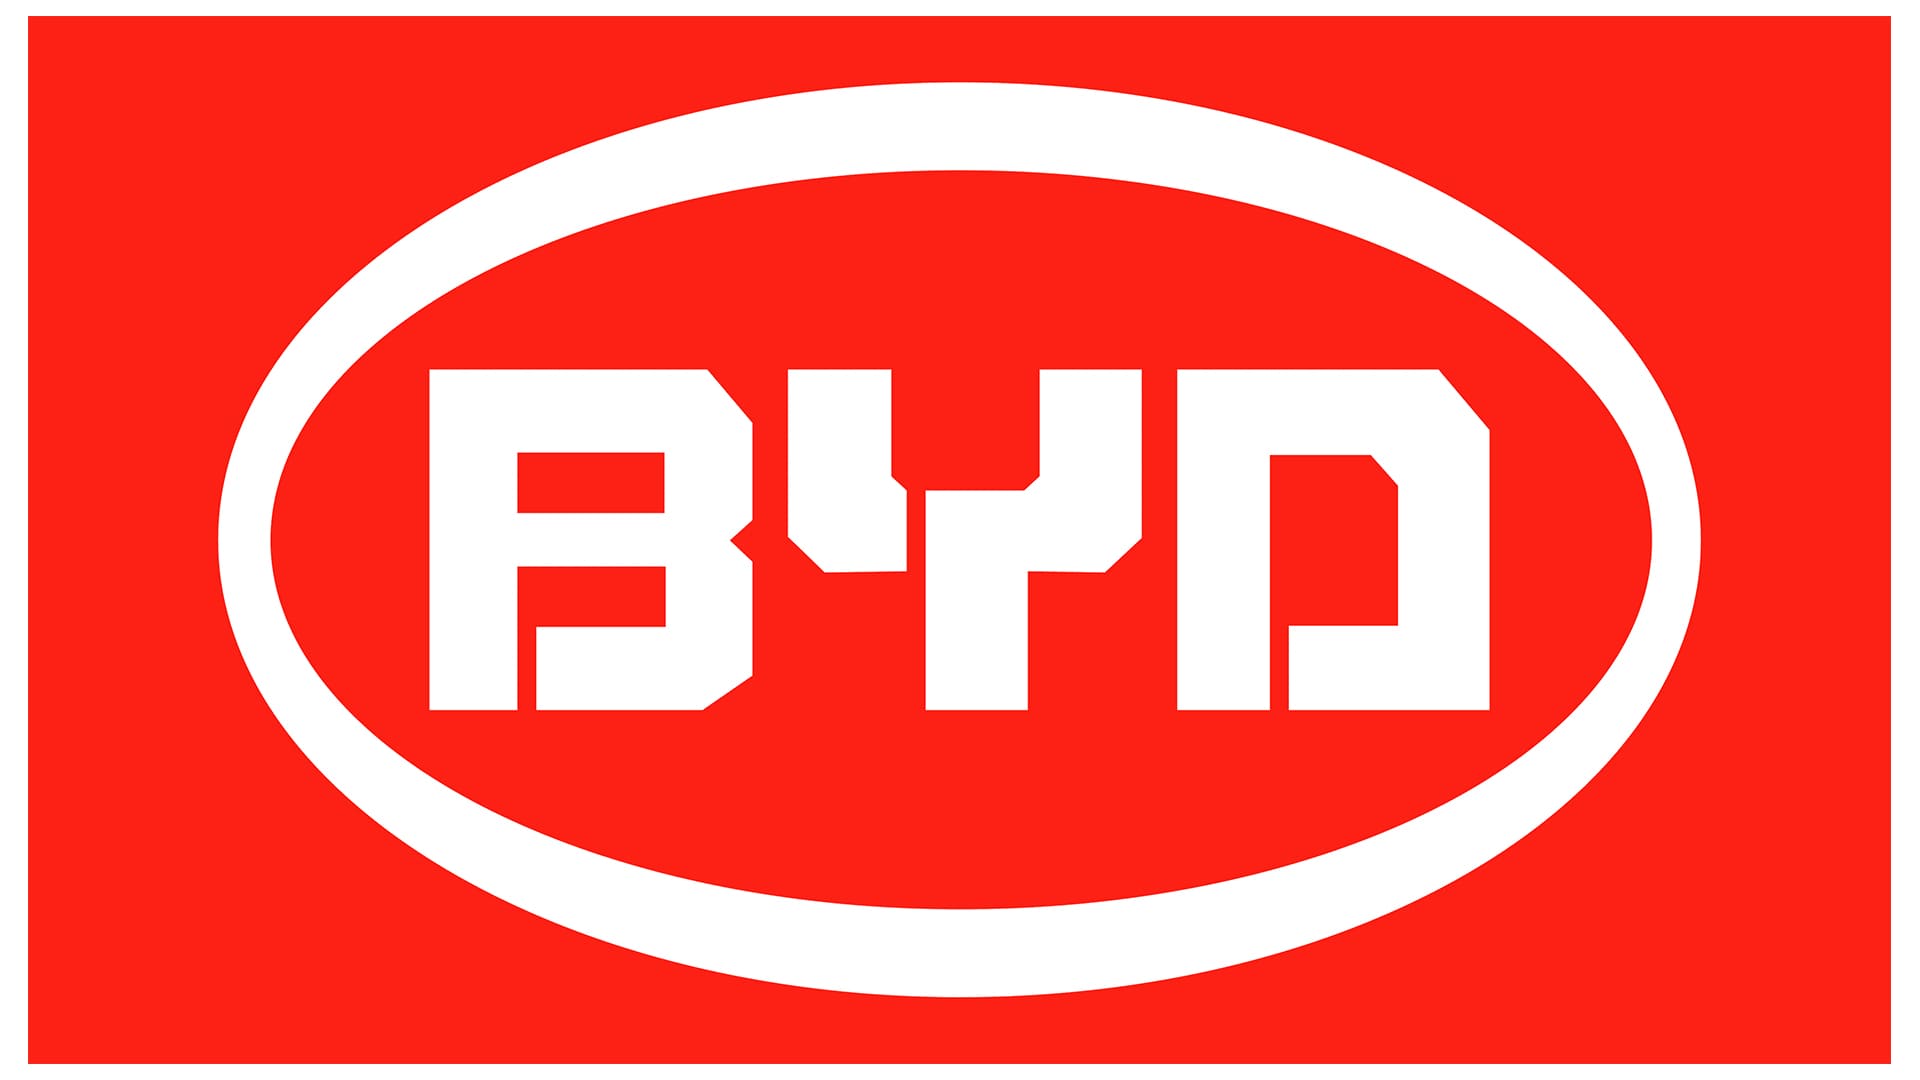 Imagem do logo da empresa BYD